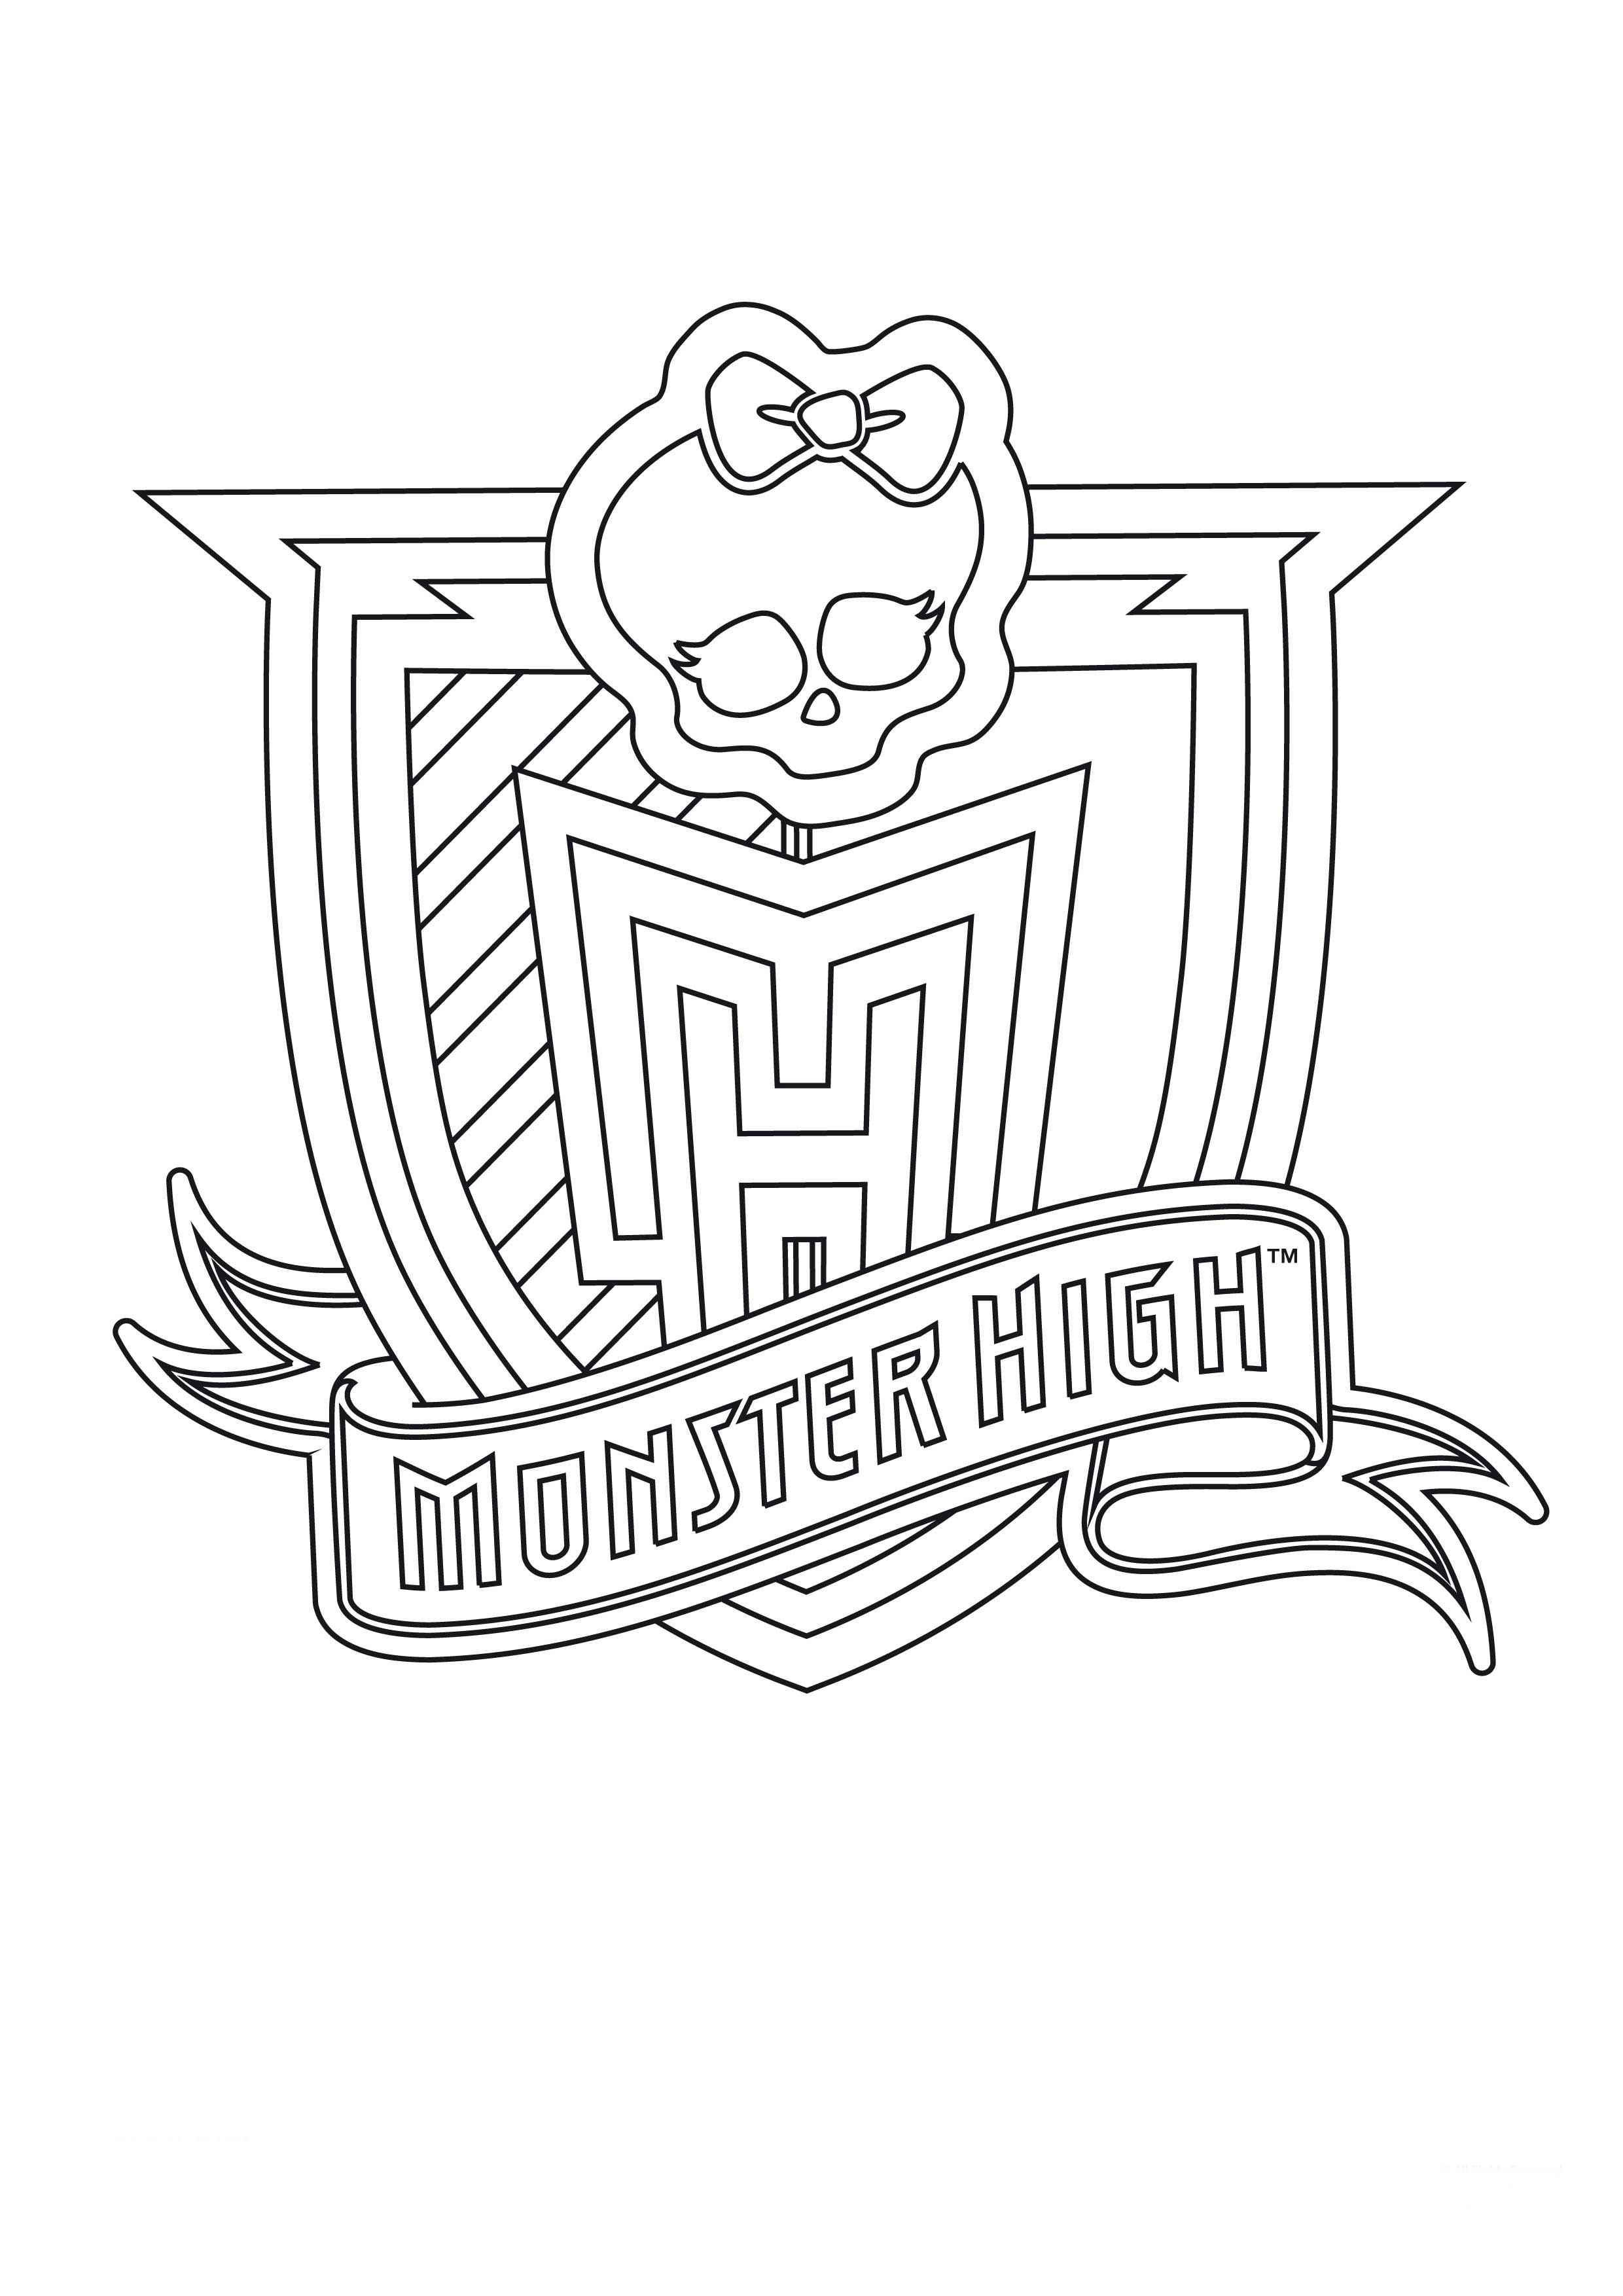 Монстер Хай логотип раскраска